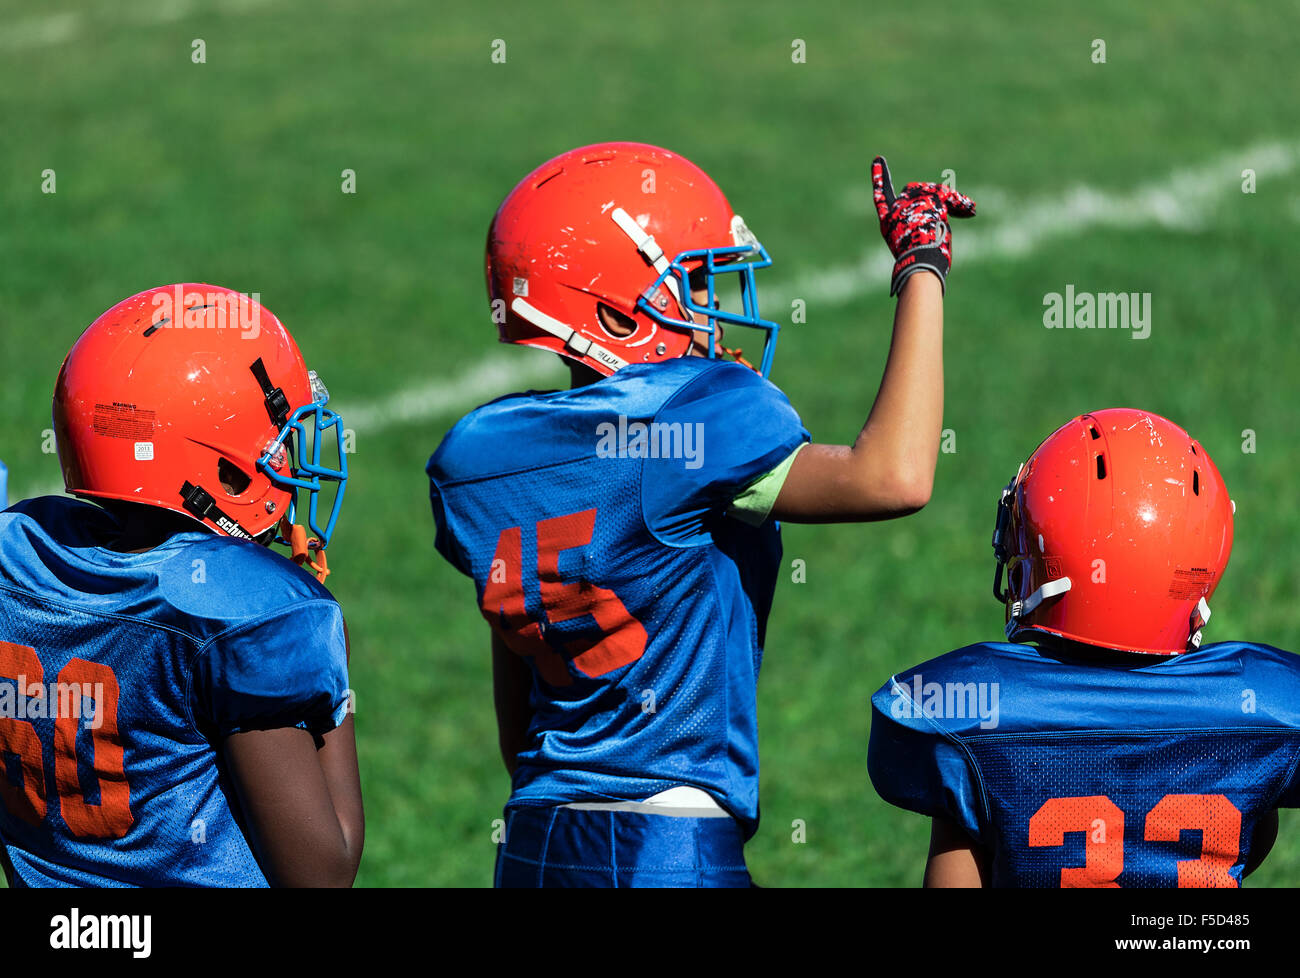 Junge Burschen an der Sideline eines Fußballspiels Pop Warner, USA Stockfoto